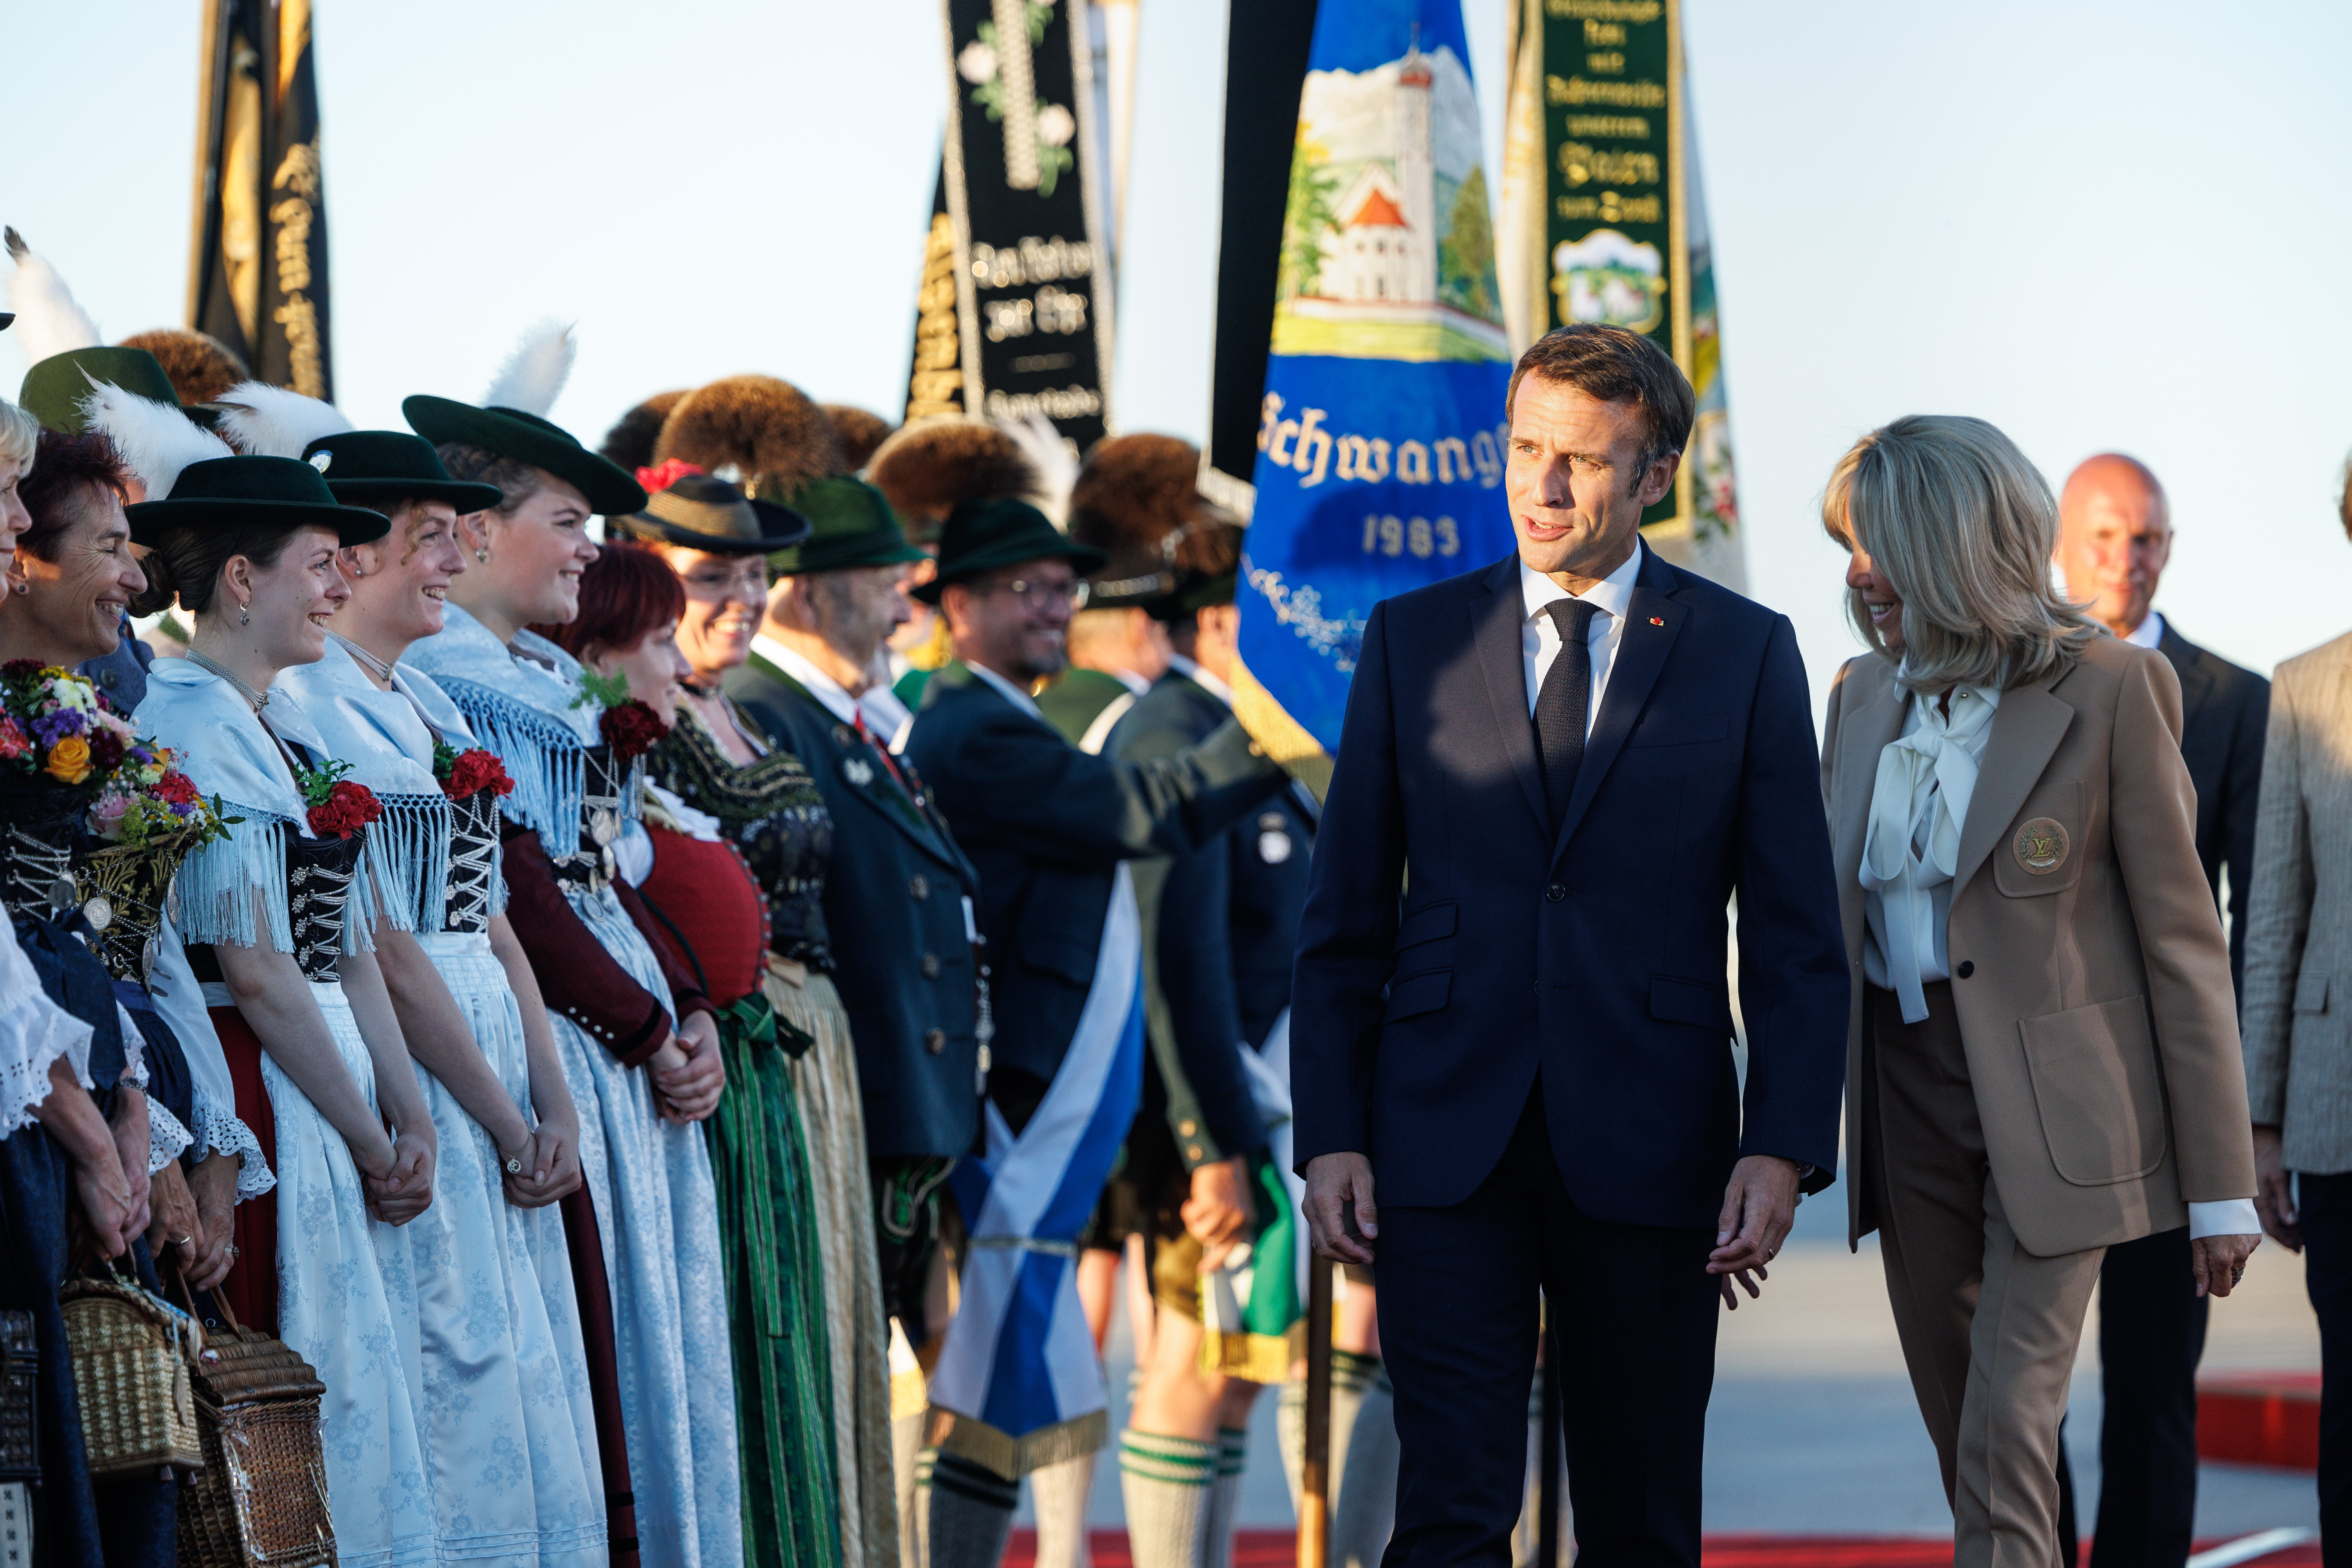 Ankunft von Emmanuel Macron (Präsident Frankreich) und seiner Frau Brigitte auf dem Flughafen München.